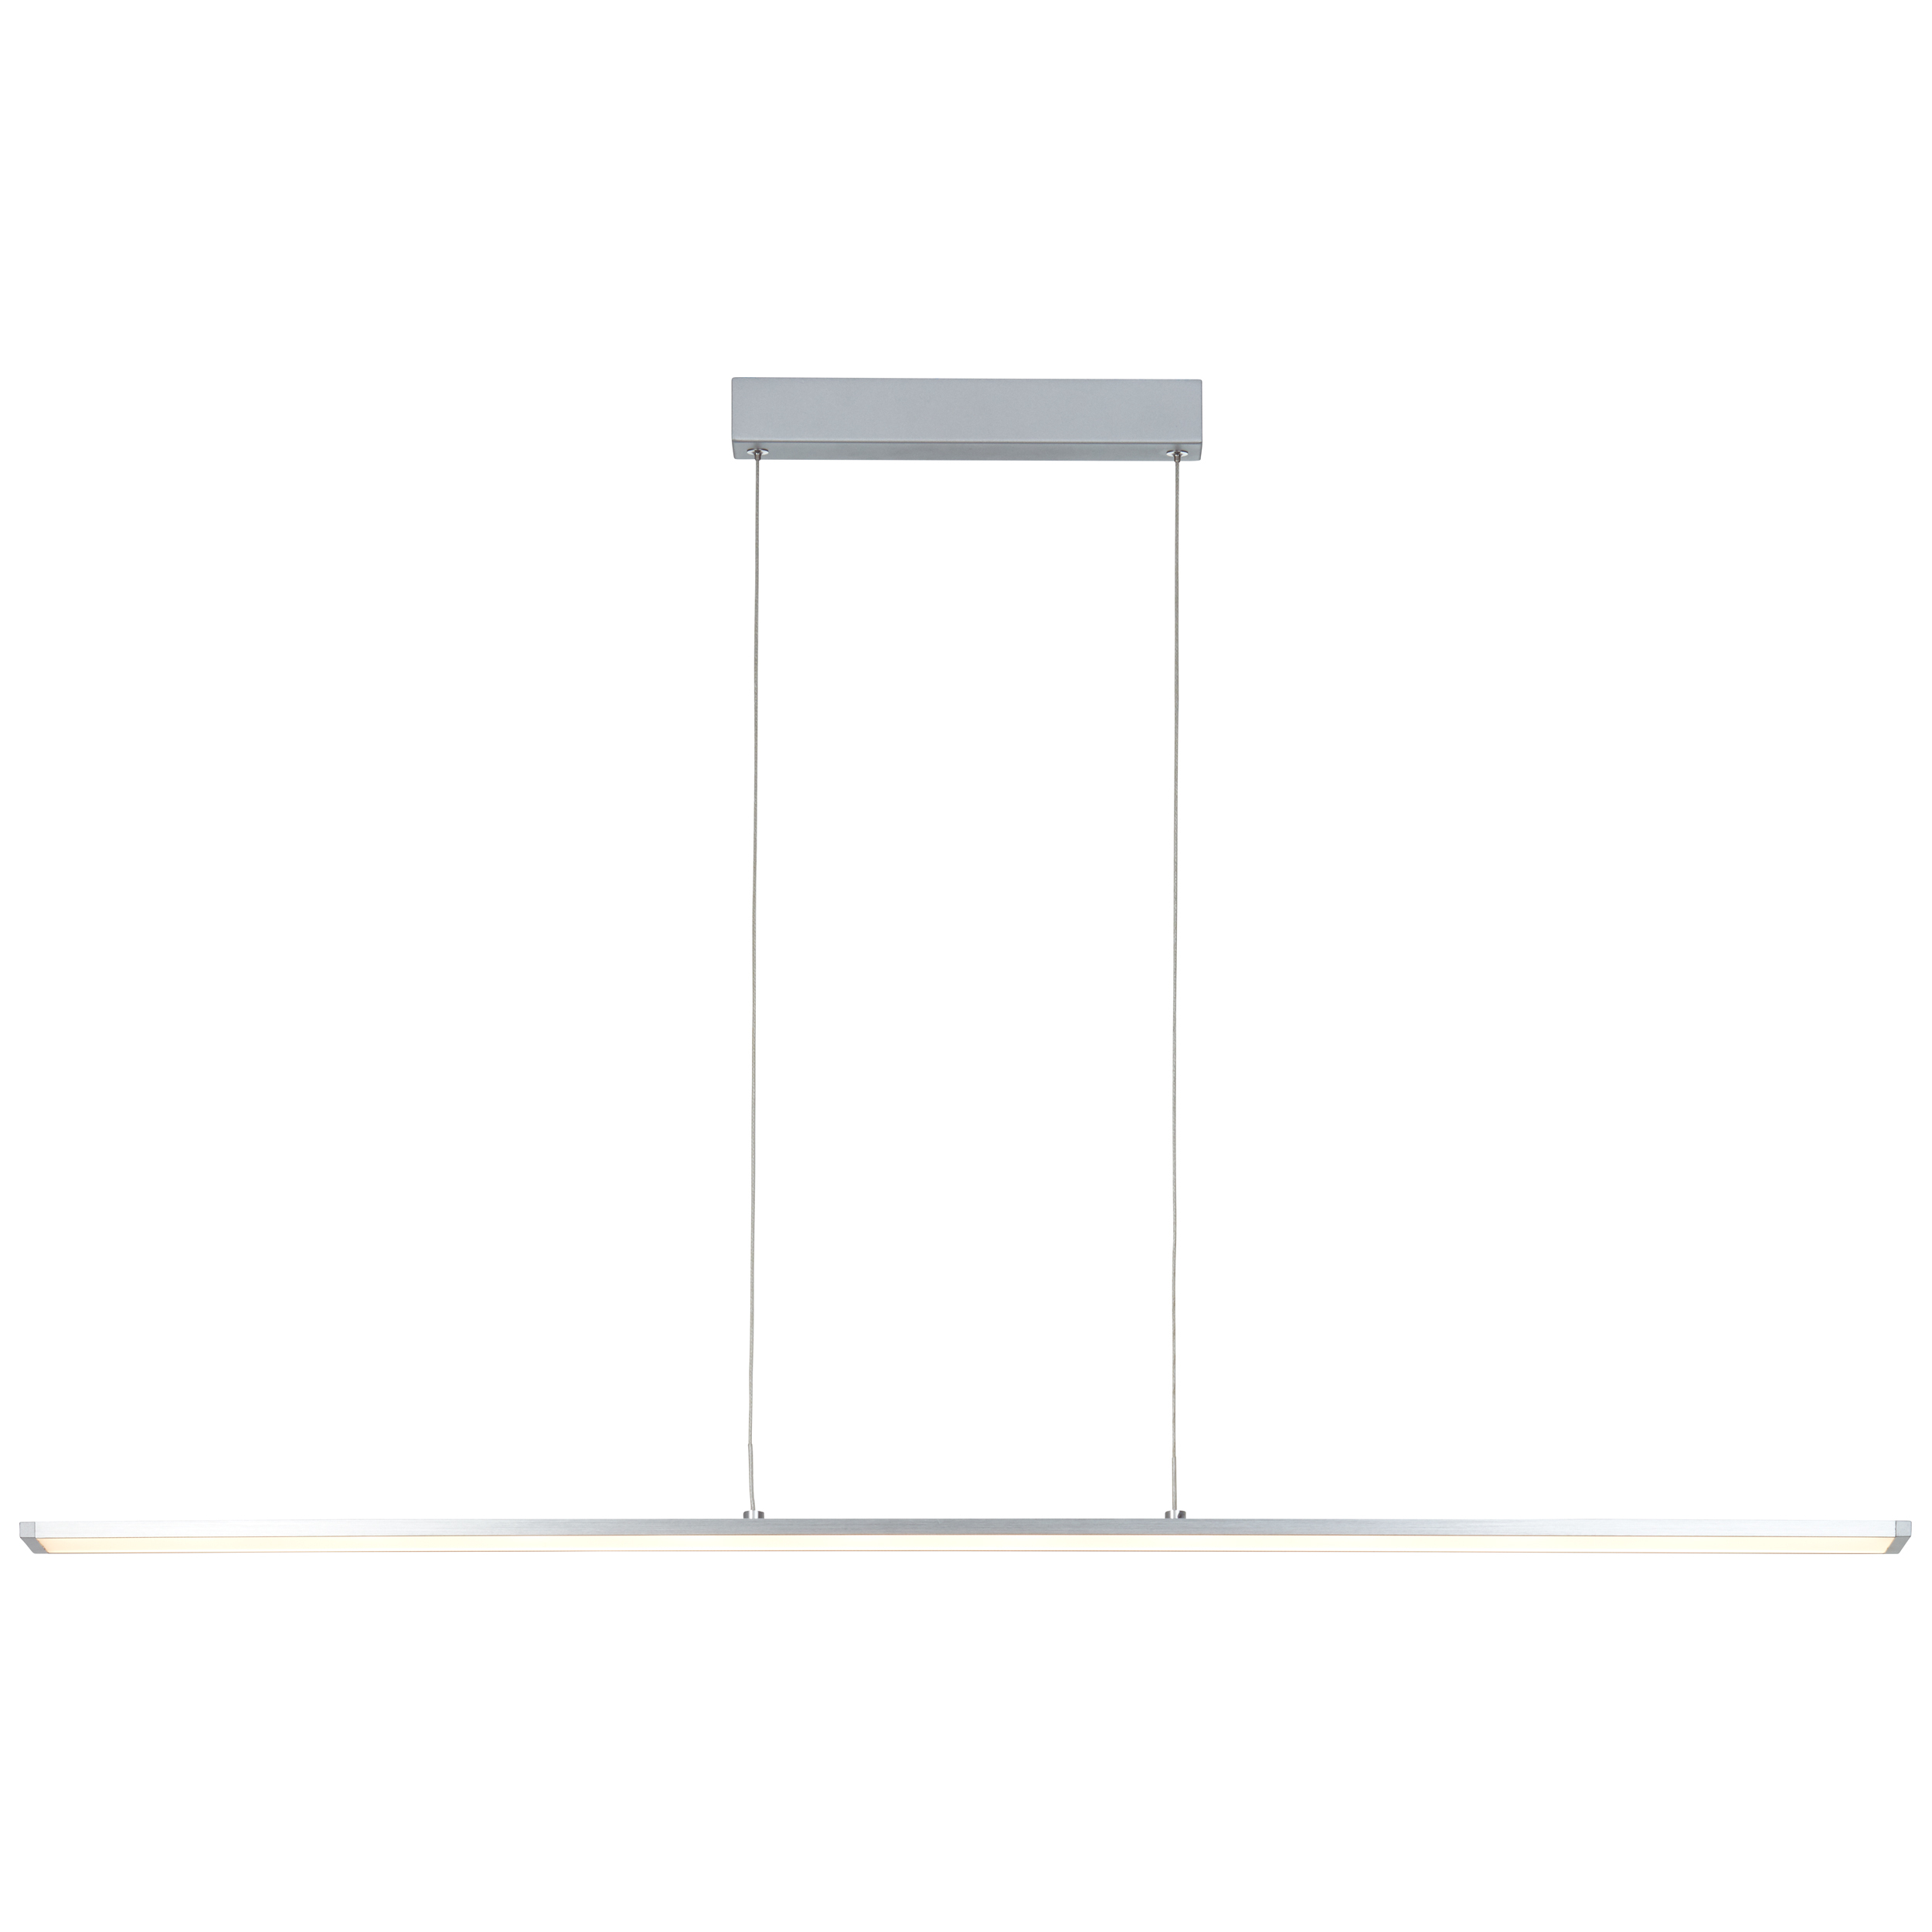 Entrance LED Pendelleuchte Paneel alu/weiß 120cm easyDim G97028/21 